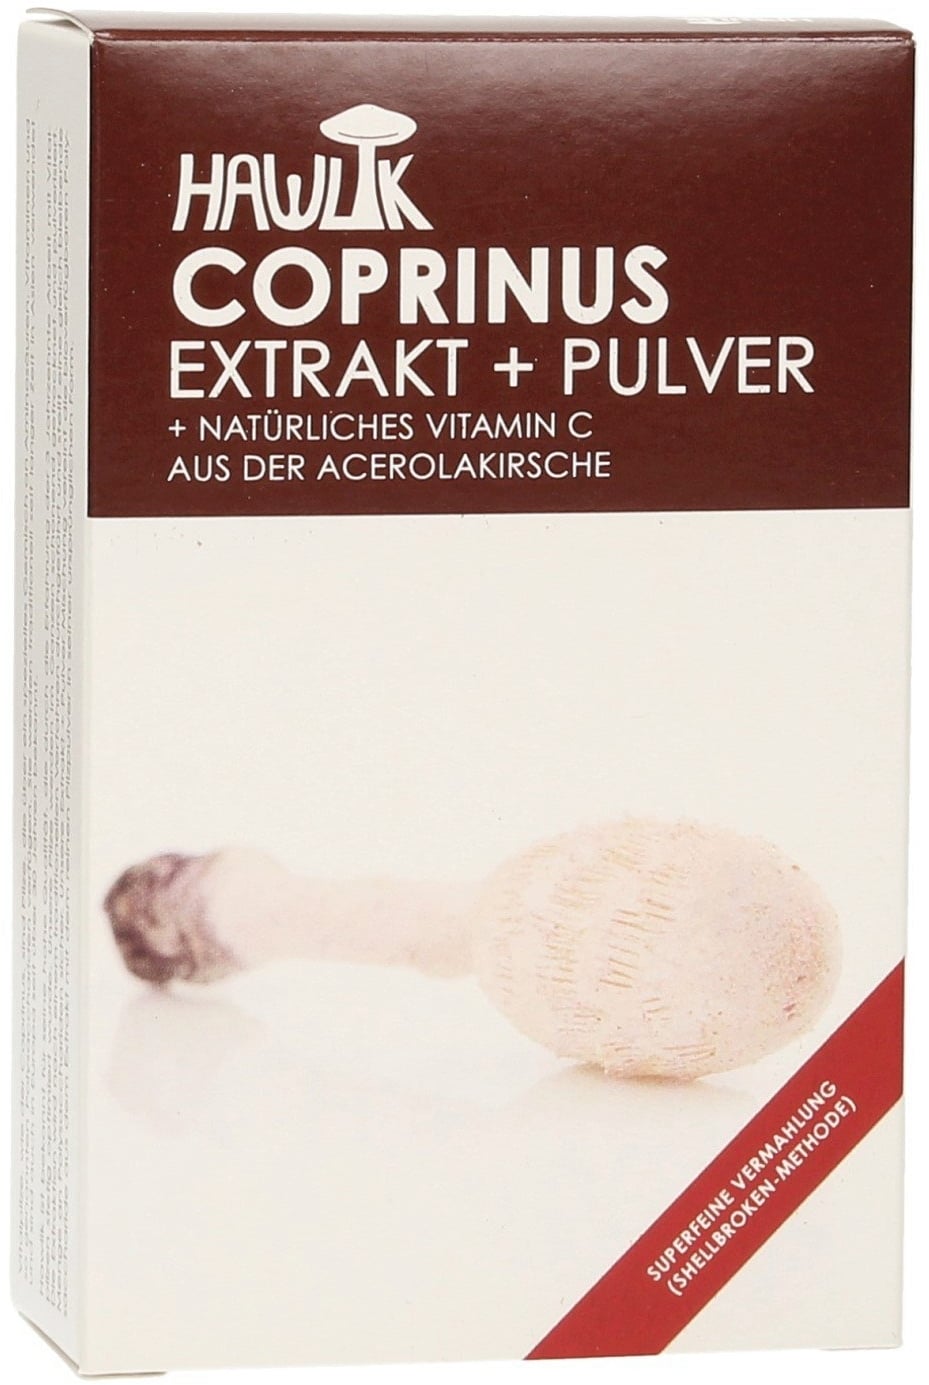 Hawlik Coprinus Extrakt + Pulver Kapseln - 60 Kapseln